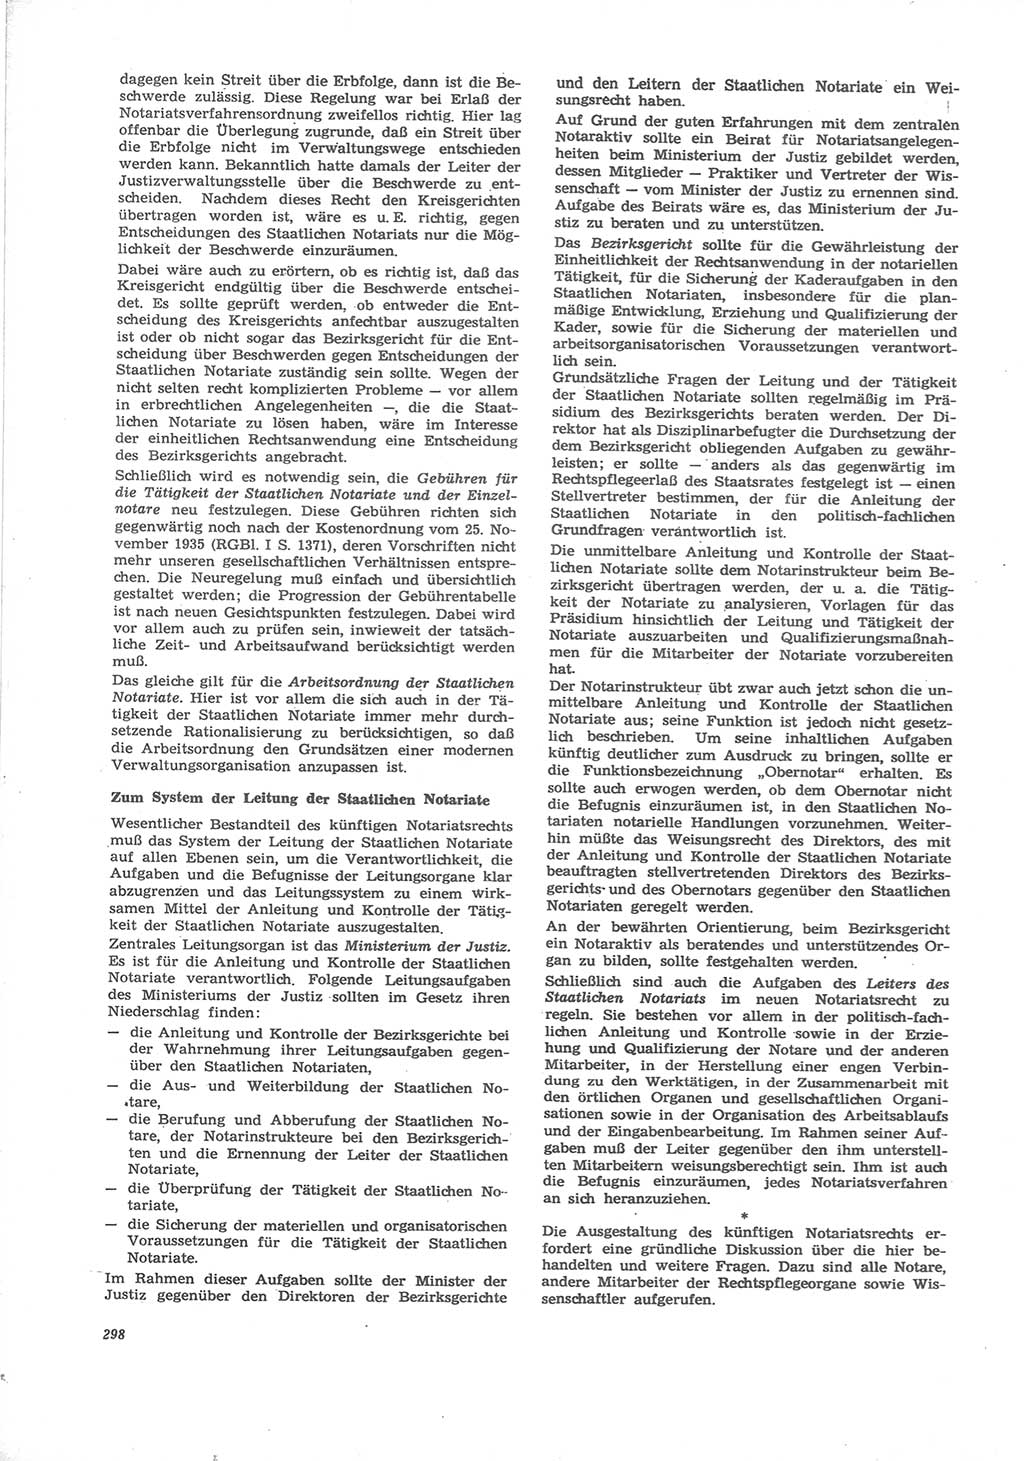 Neue Justiz (NJ), Zeitschrift für Recht und Rechtswissenschaft [Deutsche Demokratische Republik (DDR)], 24. Jahrgang 1970, Seite 298 (NJ DDR 1970, S. 298)